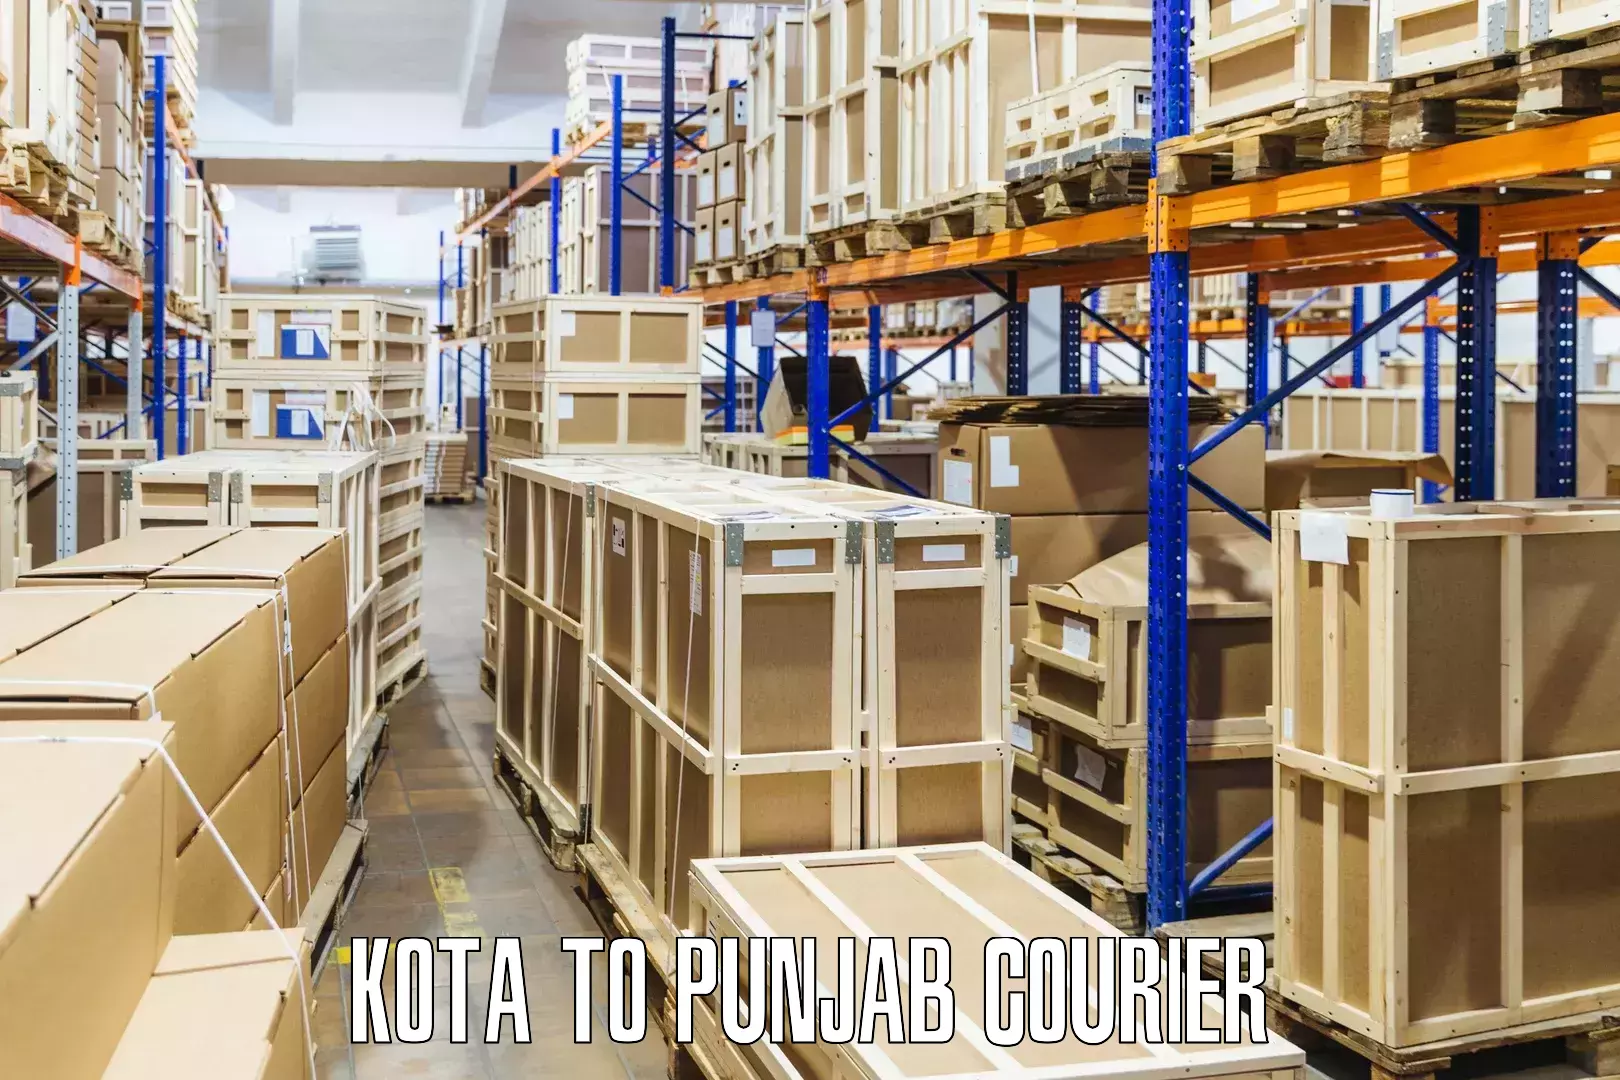 Fast parcel dispatch Kota to Punjab